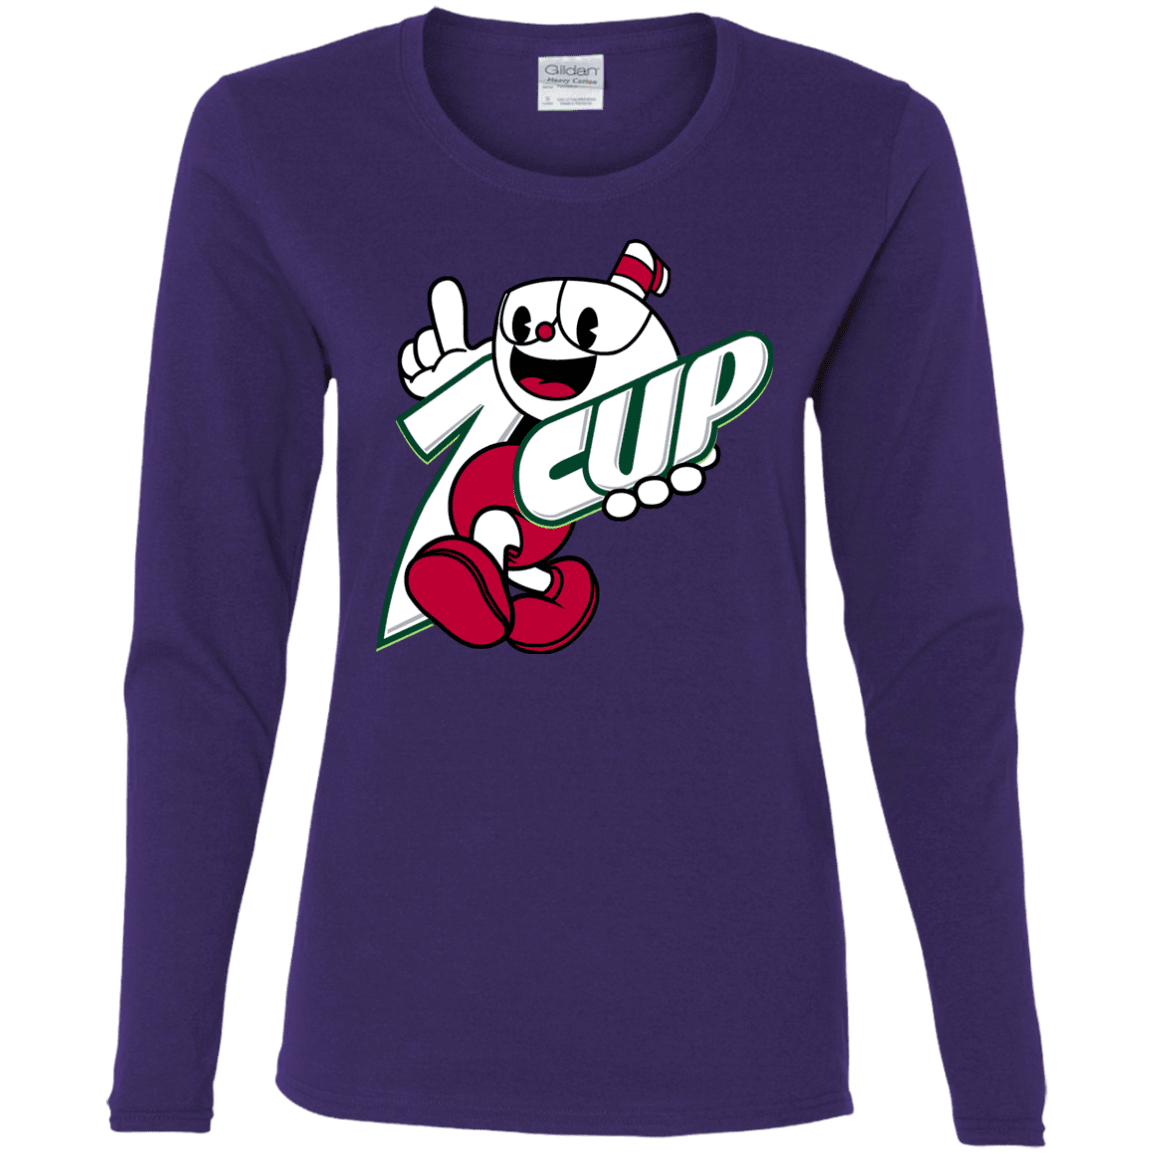 T-Shirts Purple / S 1cup Women's Long Sleeve T-Shirt